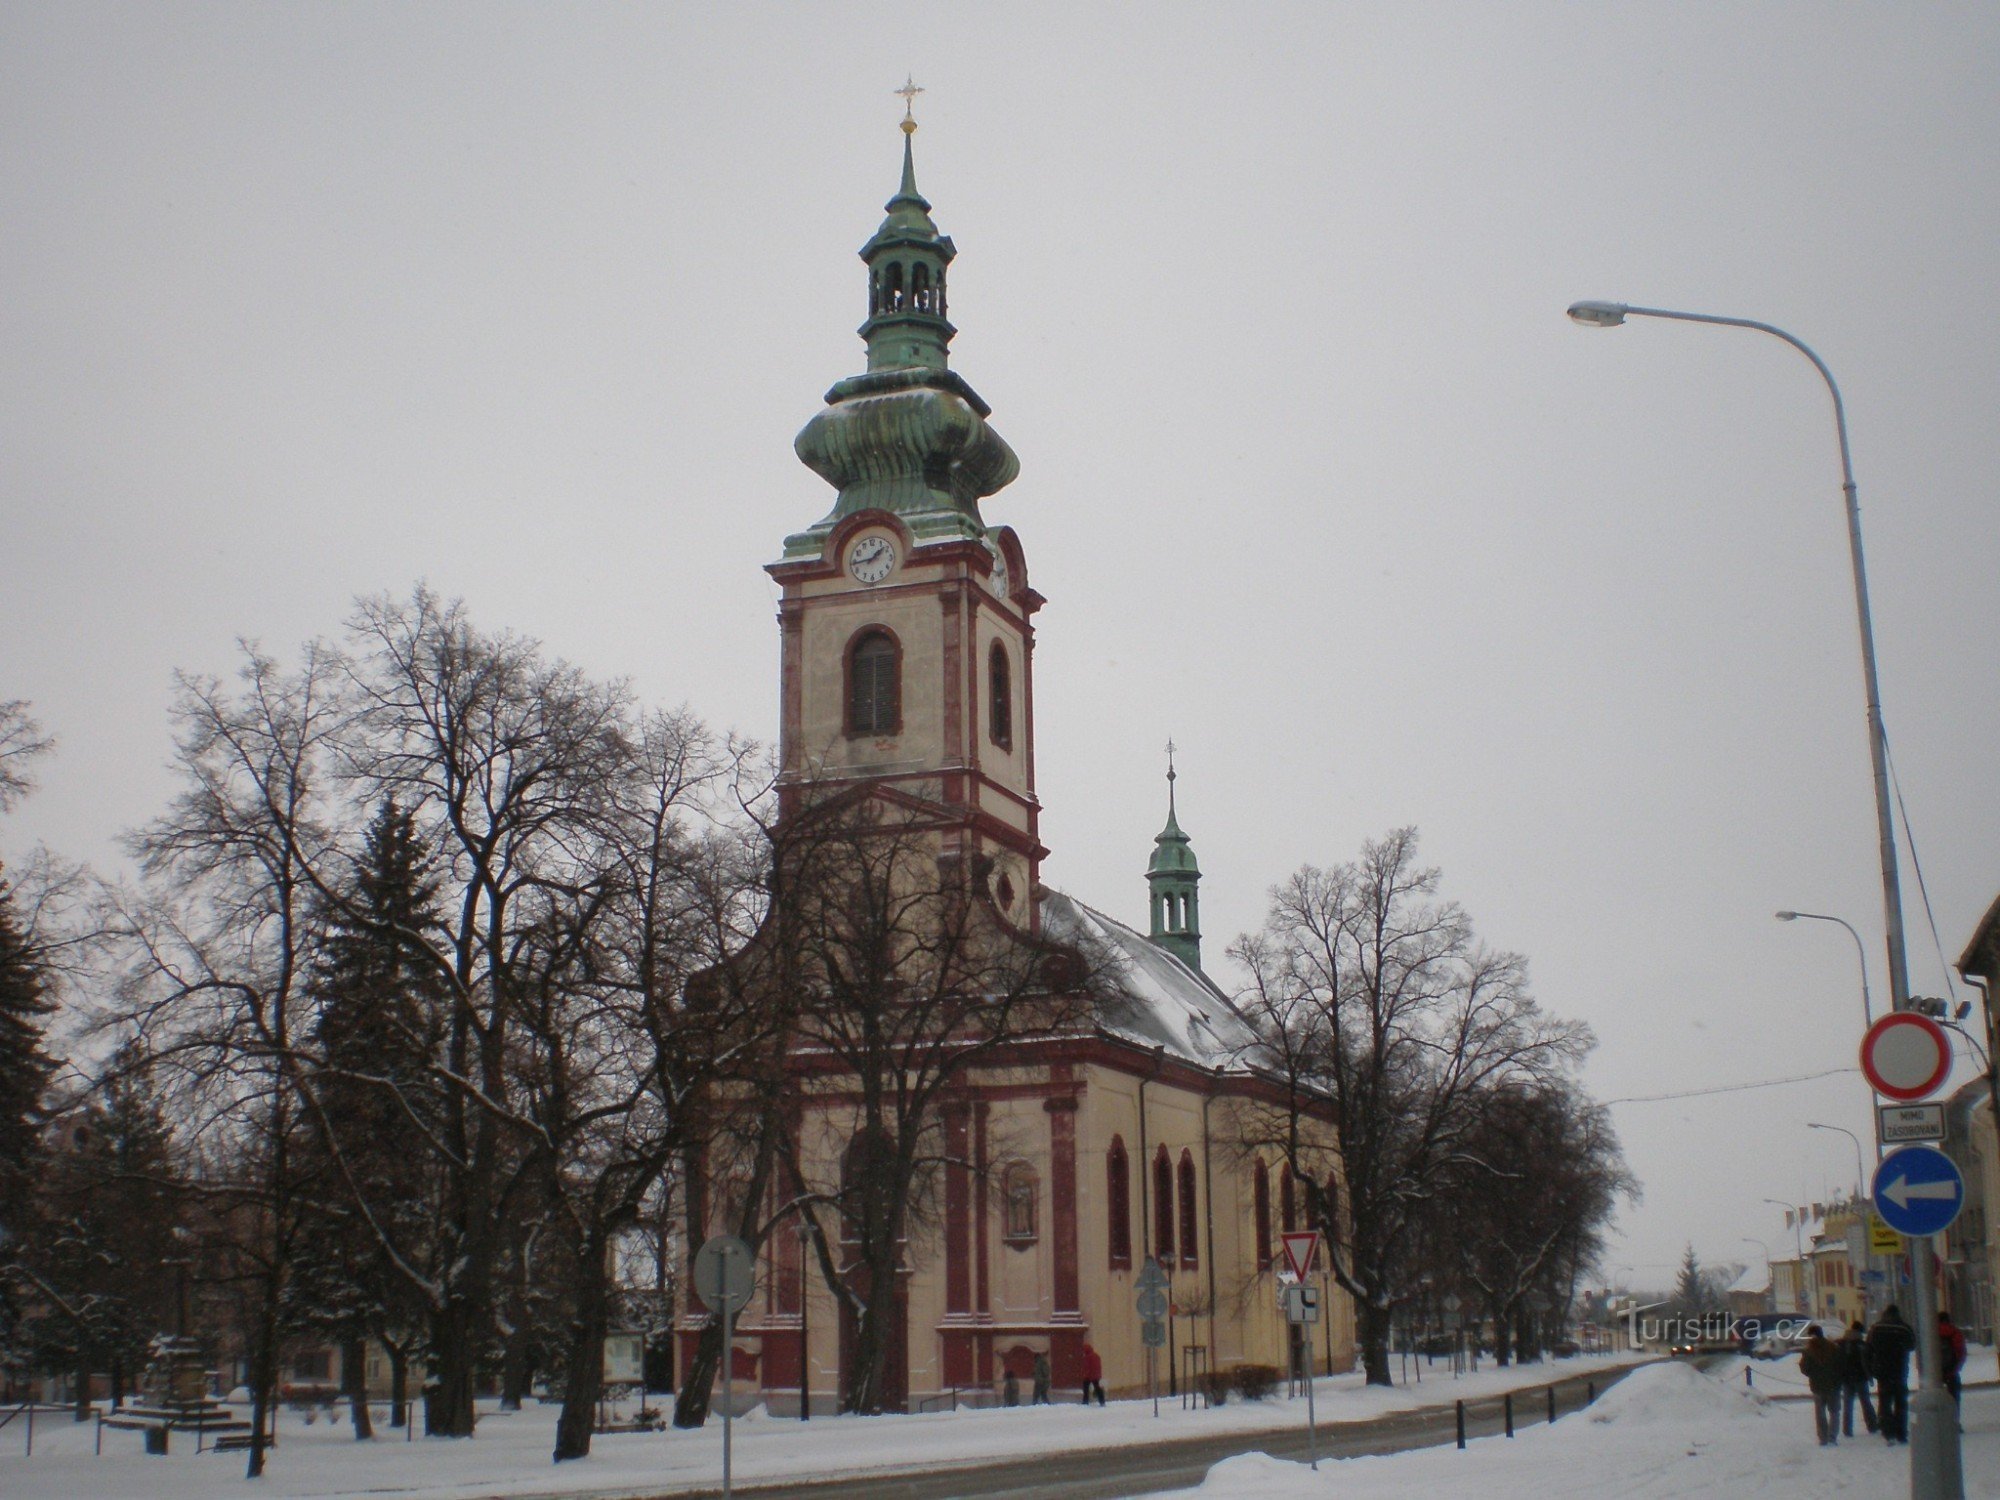 Kostelec nad Černými lesy - place avec l'église de St. Anges gardiens